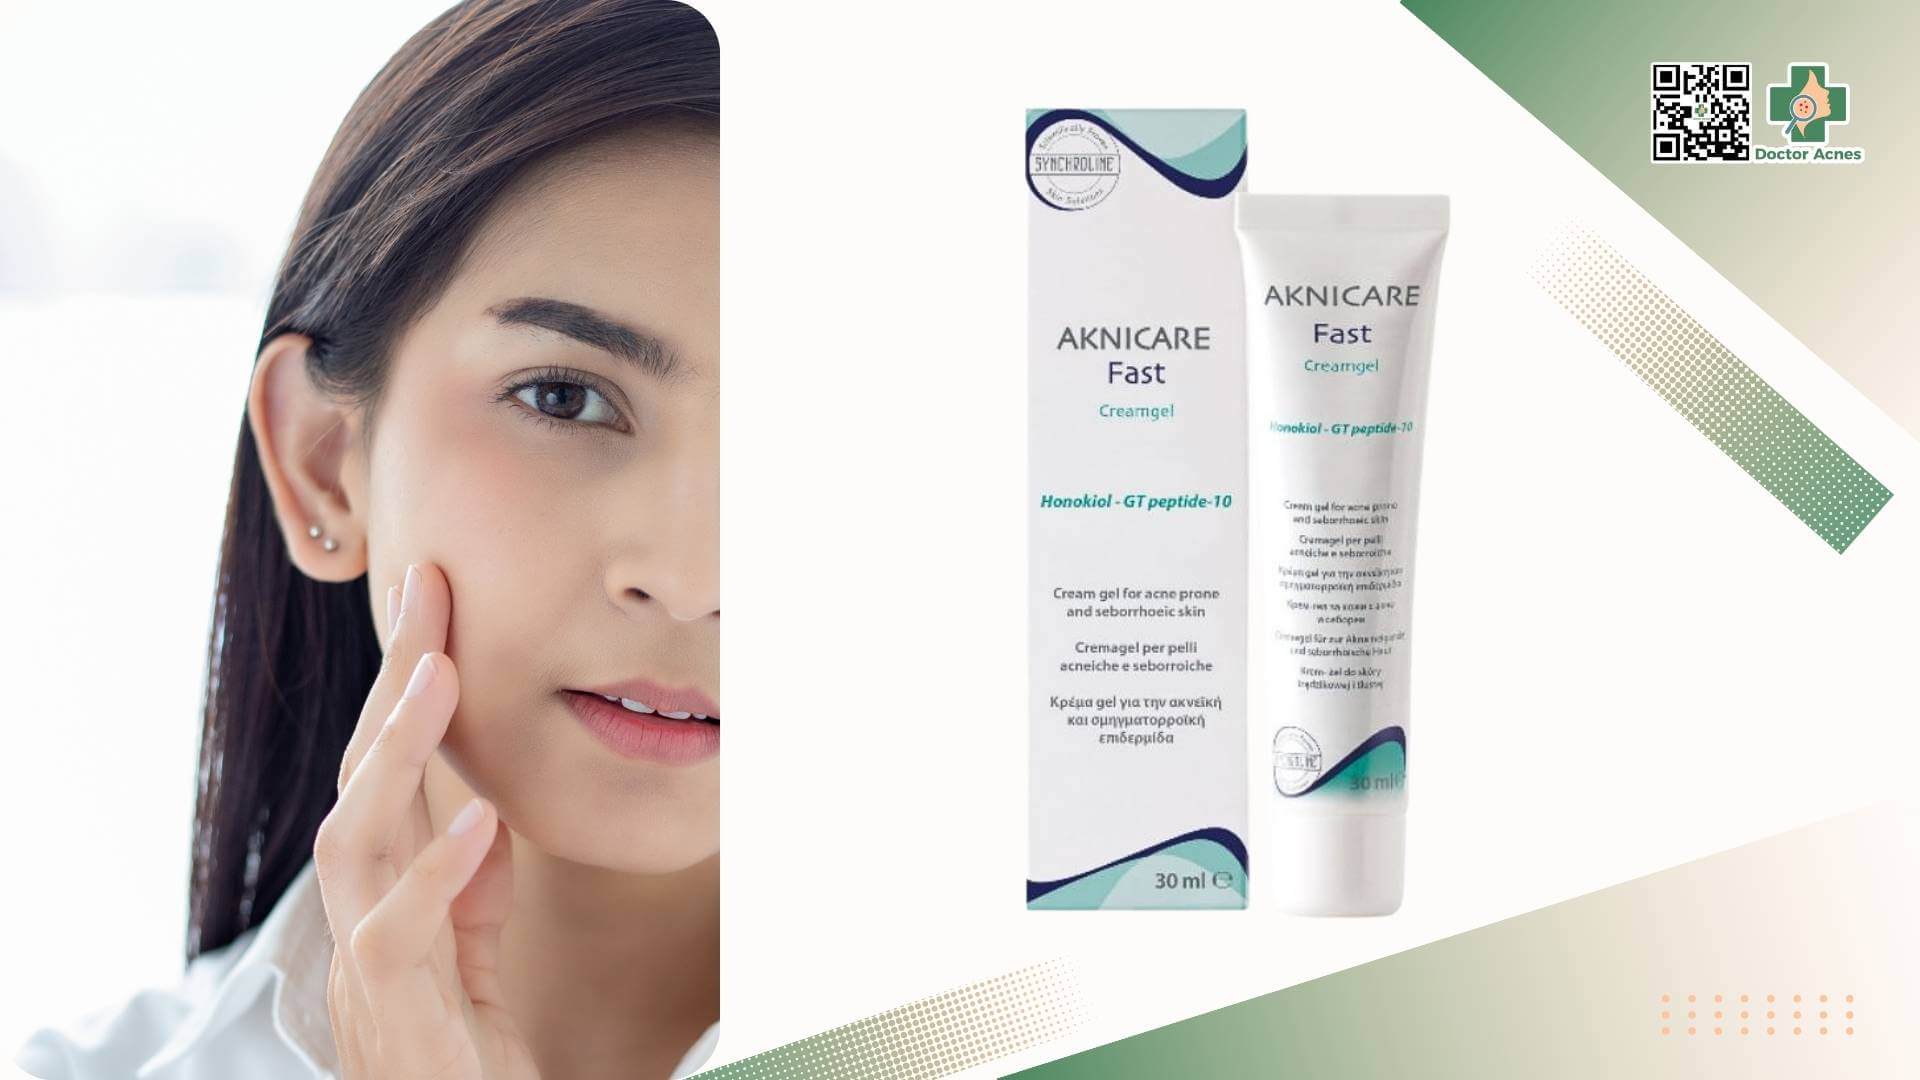 Kem dưỡng chuyên biệt dành cho da mụn, giúp giảm mụn & ngăn ngừa mụn Aknicare Fast Cream Gel